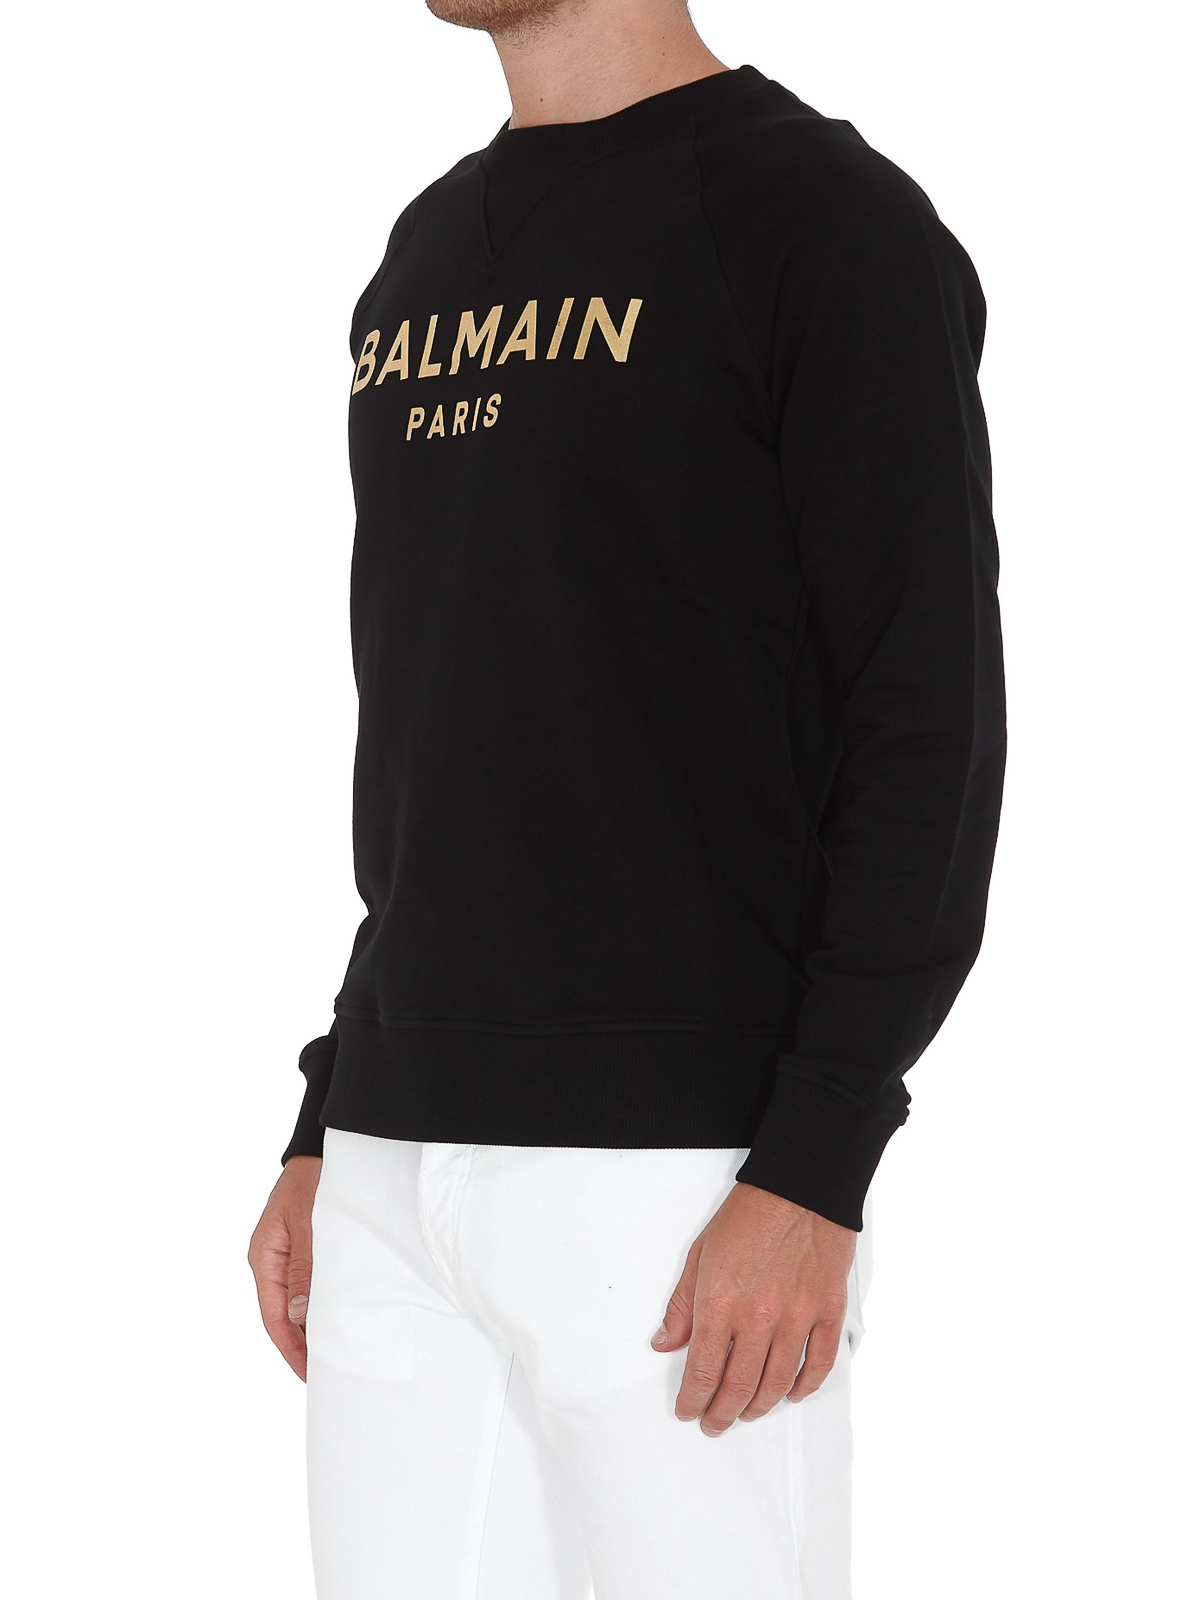 BALMAIN × emblem sweat shirt